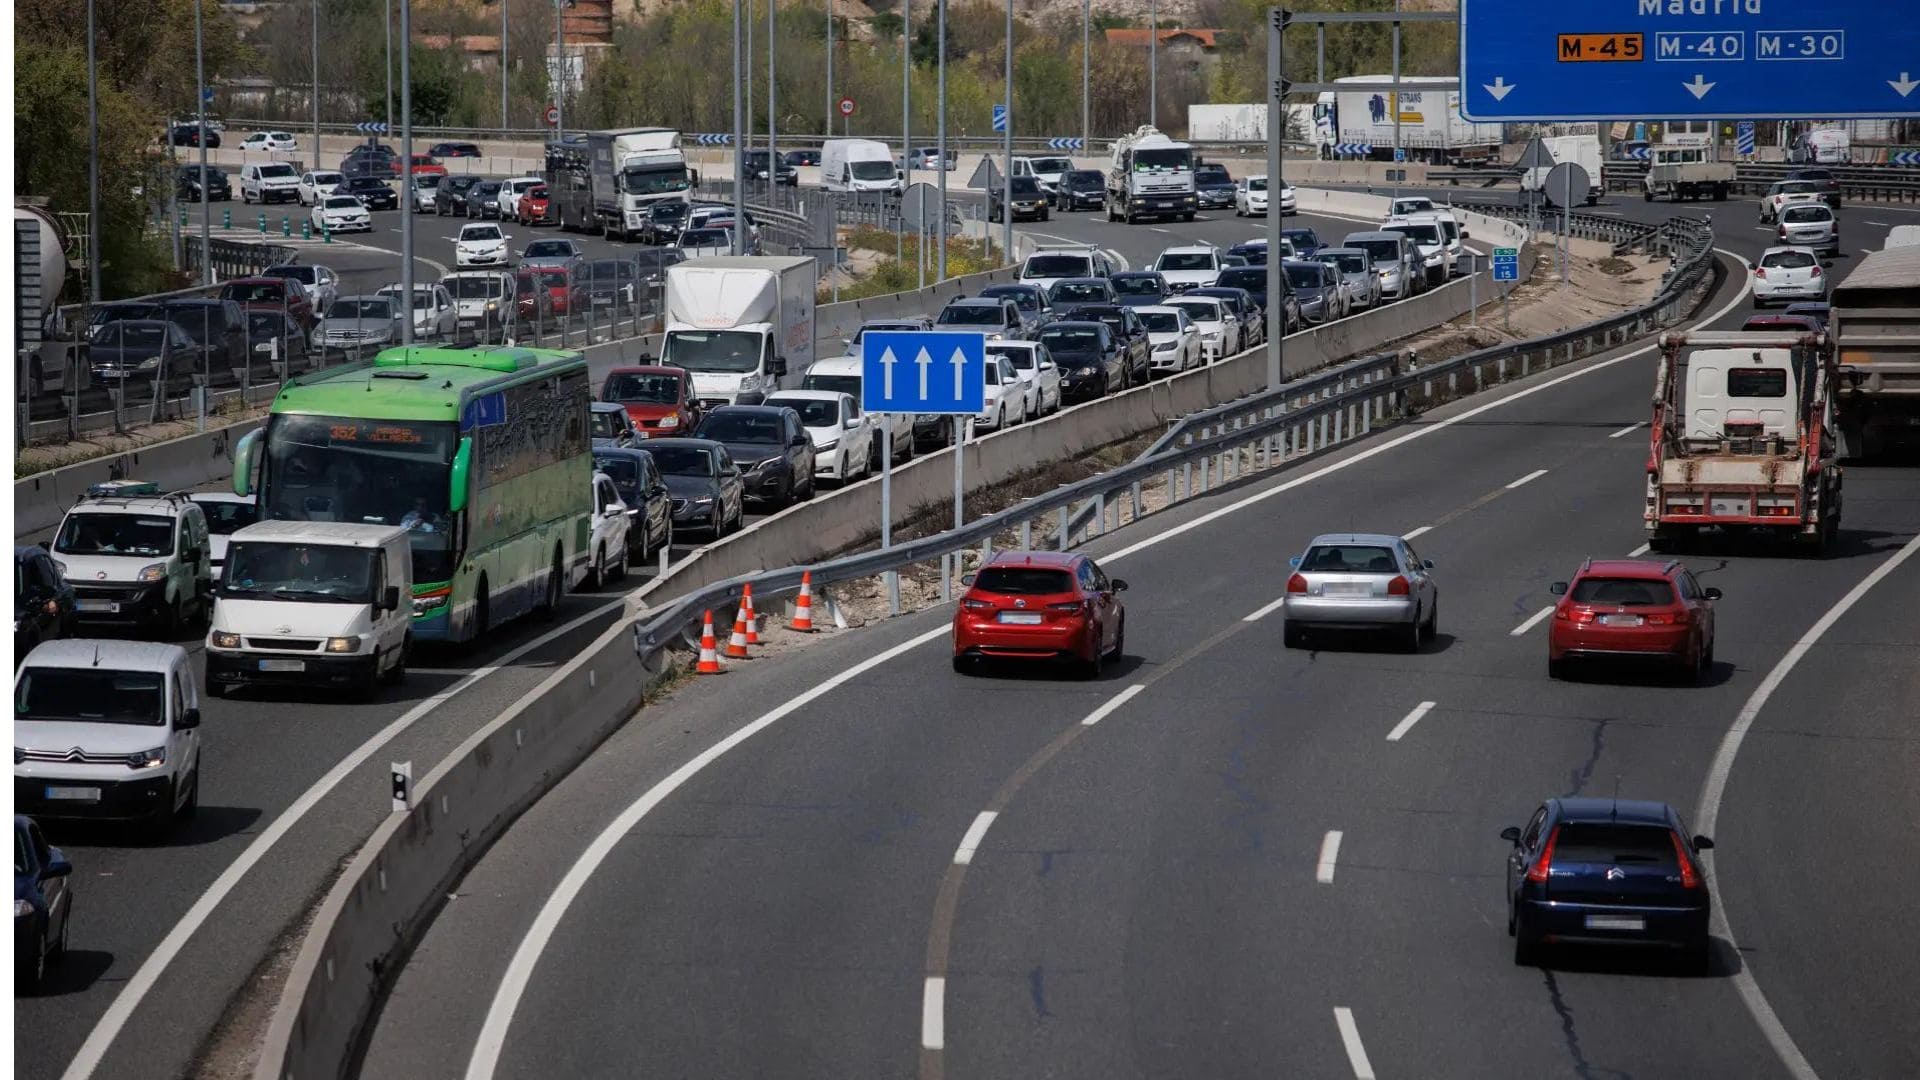 200 euros de multa: la nueva sanción de la DGT al circular por estas carreteras indebidamente